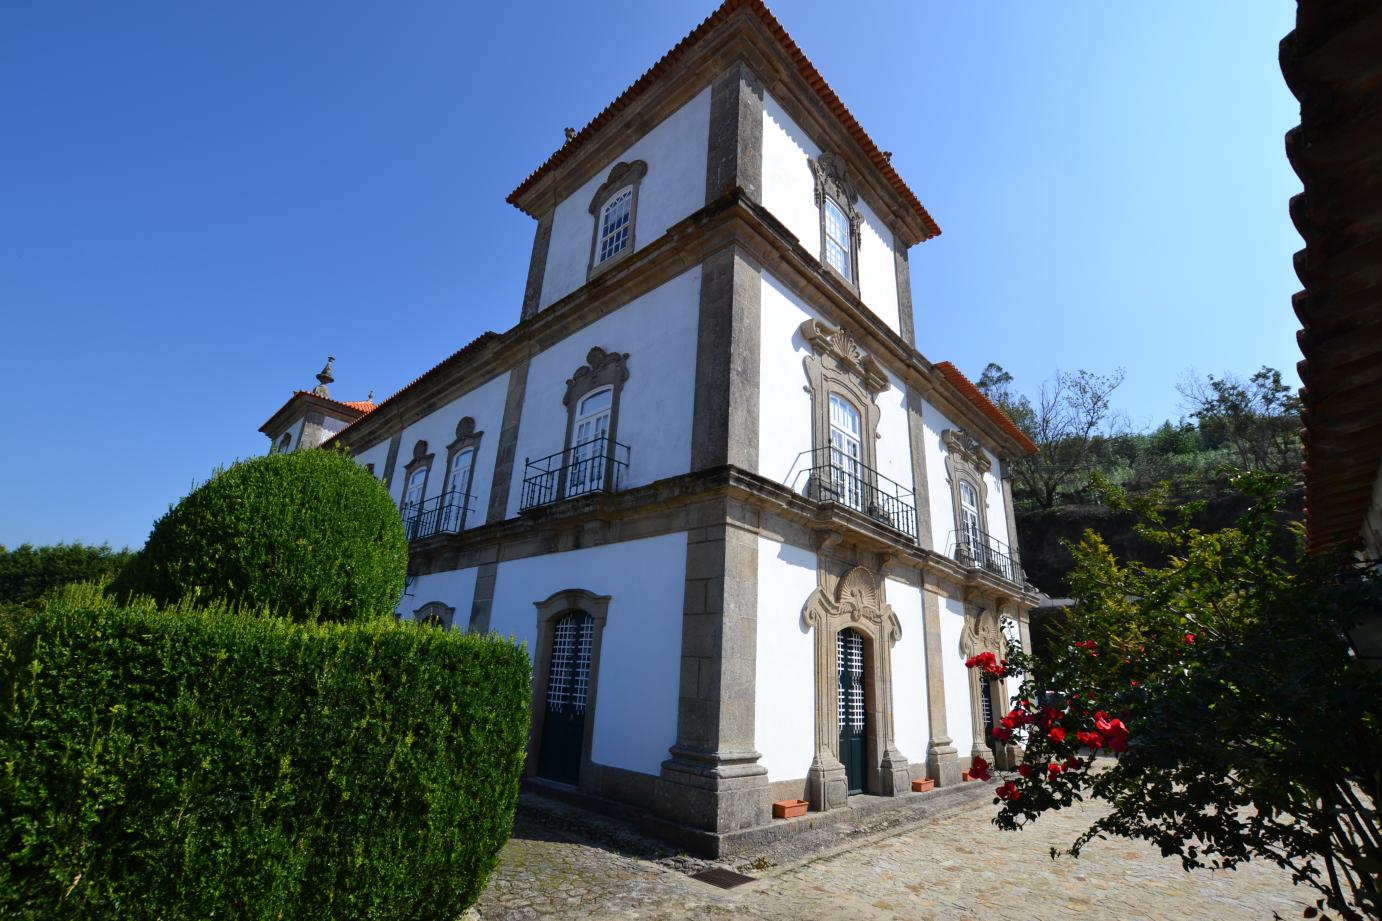 Casa das Torres - Ponte de Lima